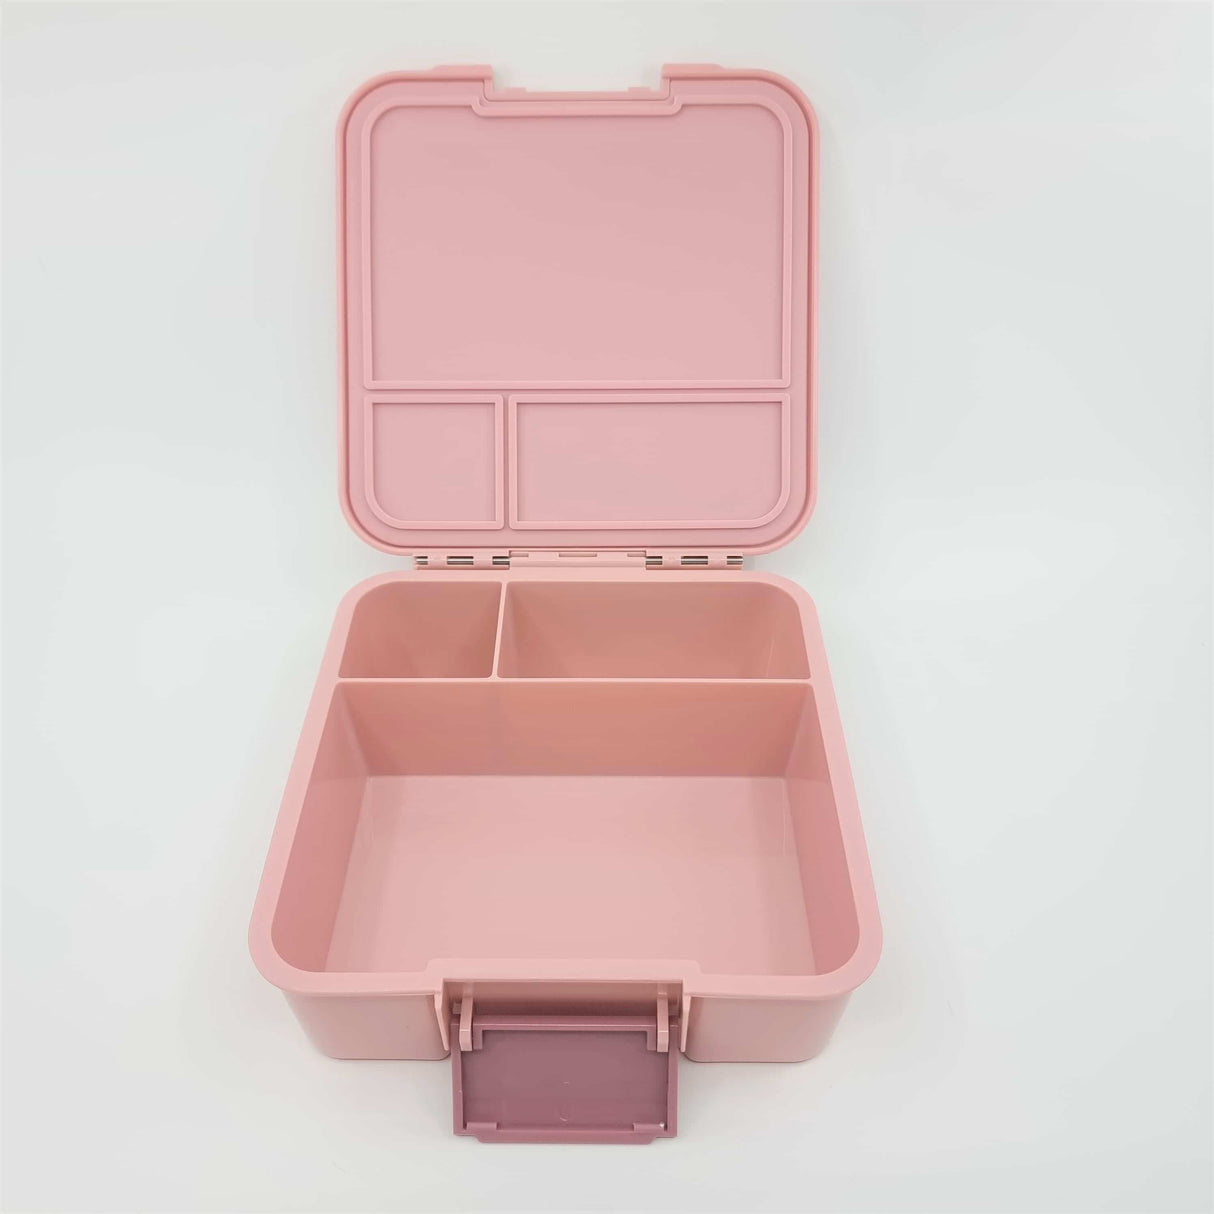 Znünibox Little Lunch Box Bento Three mit 3 Unterteilungen Altrosa